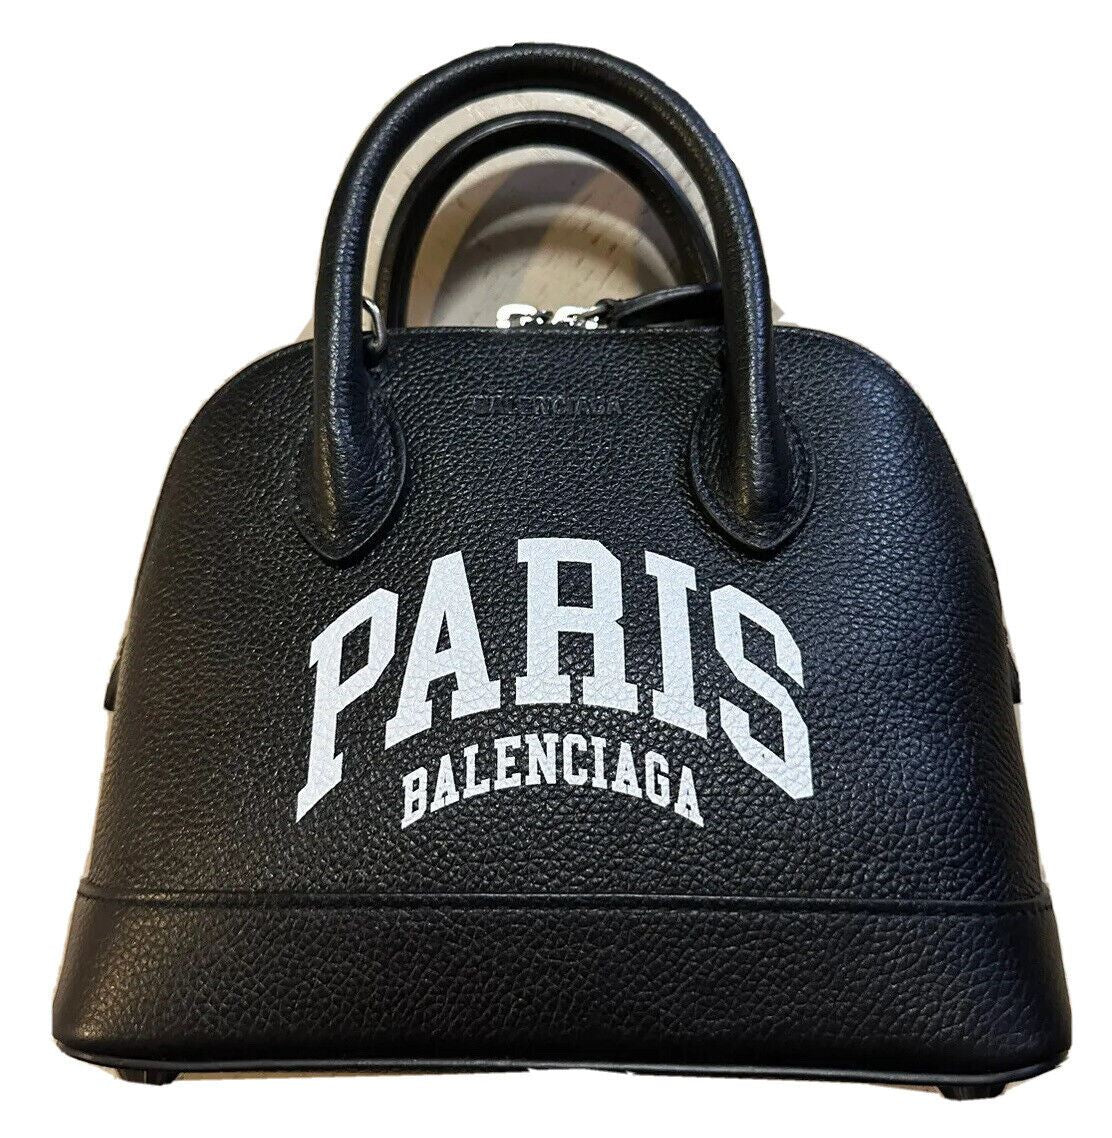 New BALENCIAGA XXS Paris Logo Leather Top-Handle Bag Black/White Italy